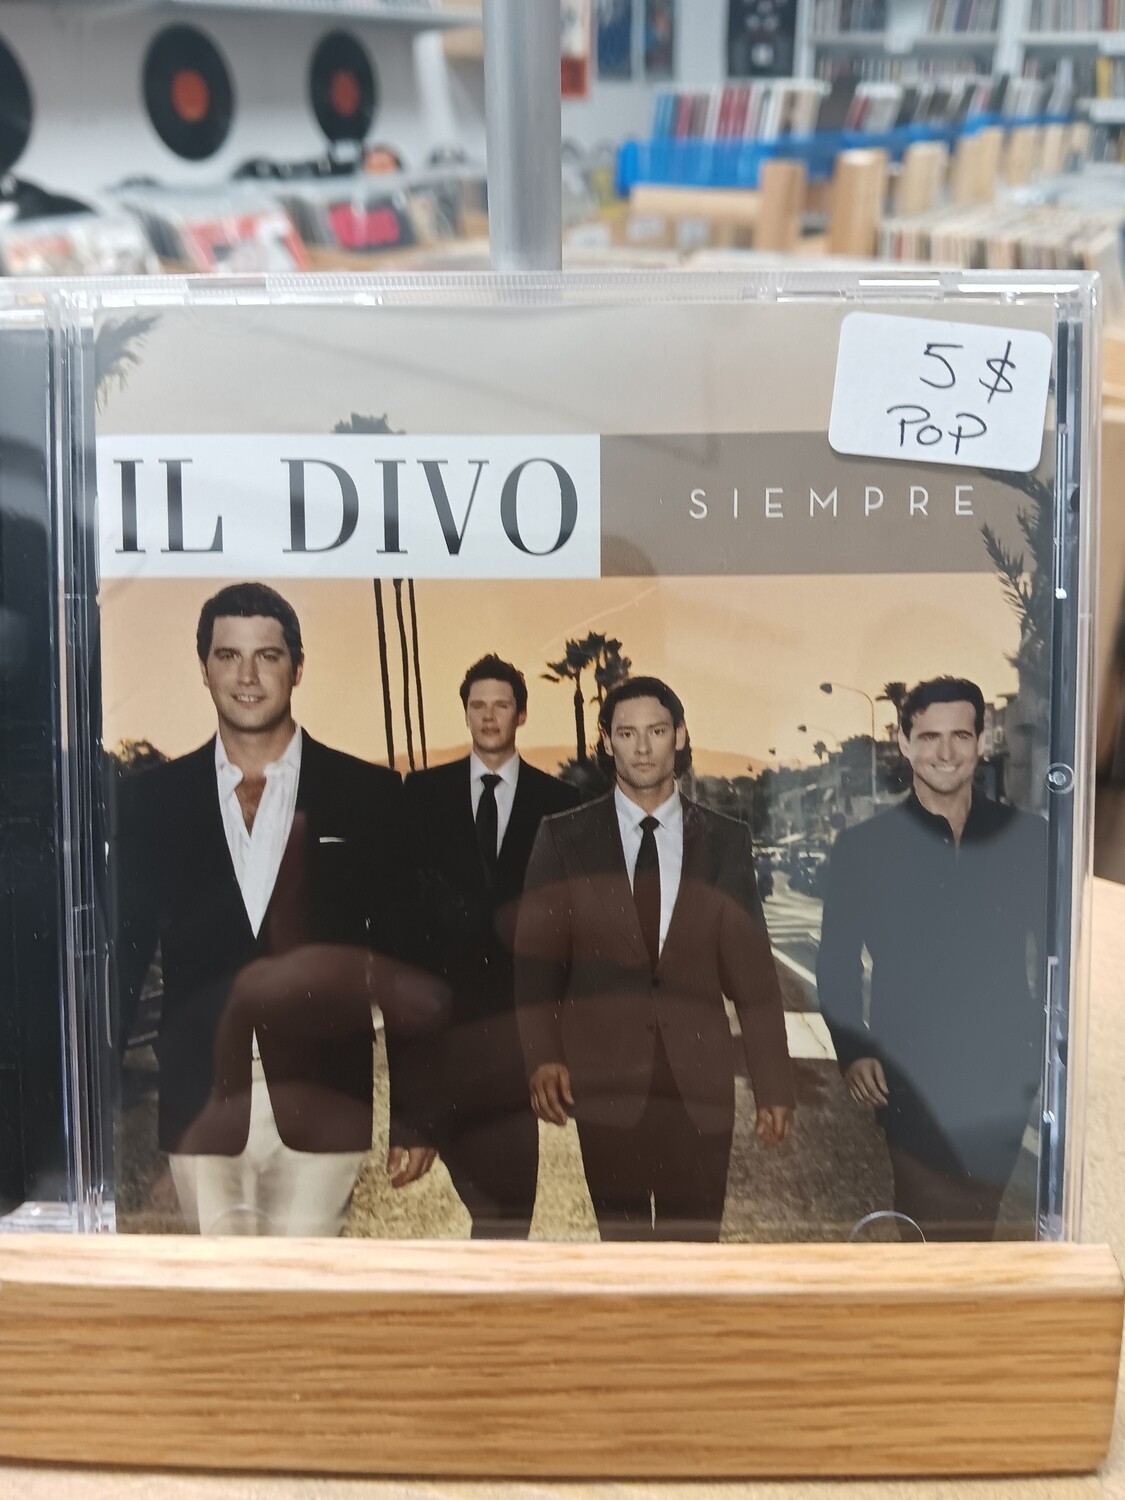 IL DIVO - Siempre (CD)